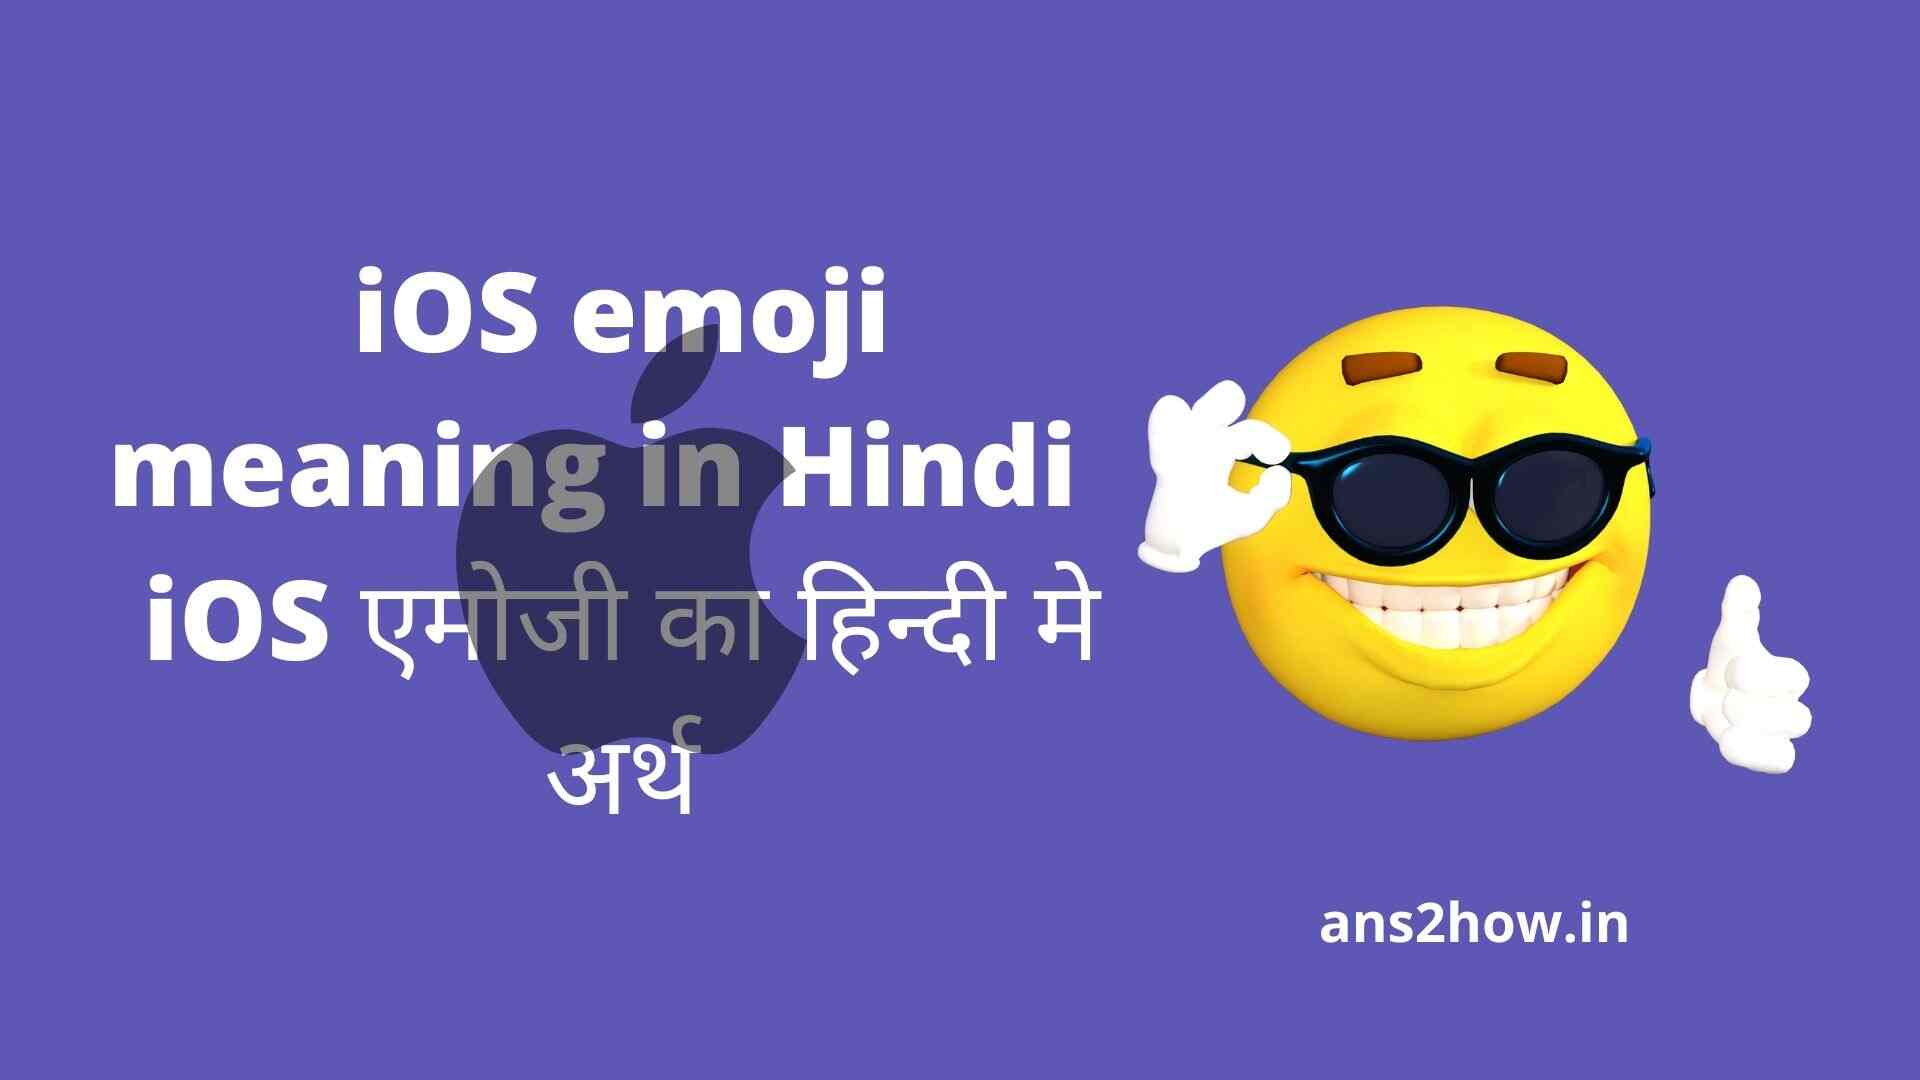 iOS emoji meaning in Hindi